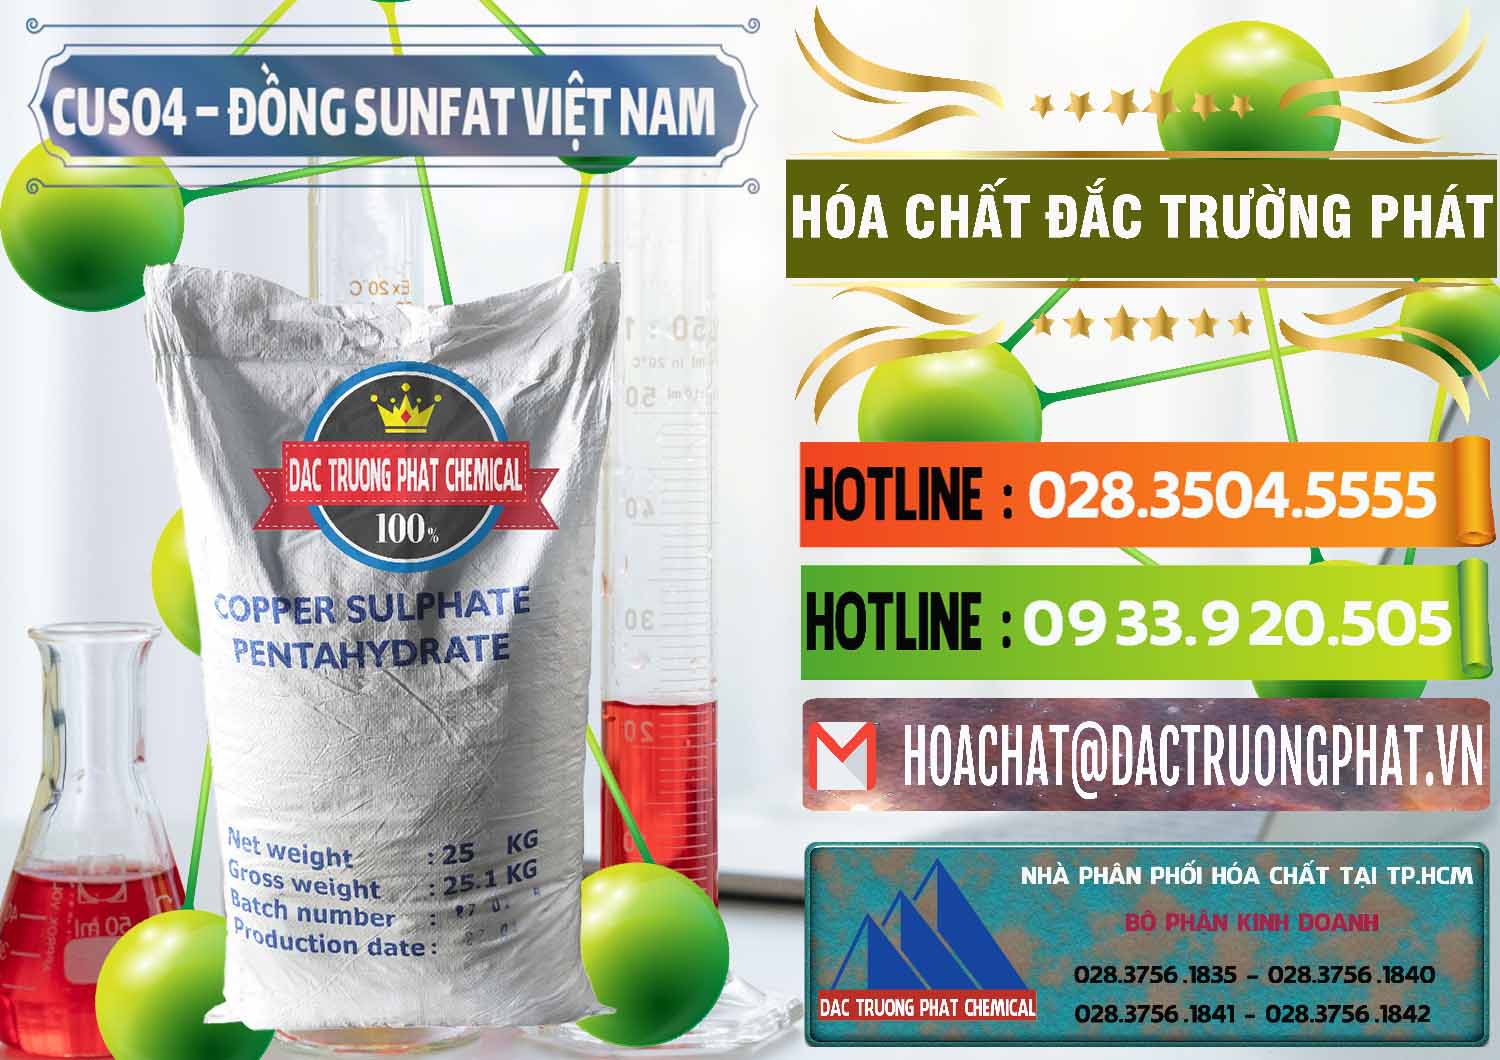 Công ty chuyên phân phối - bán CuSO4 – Đồng Sunfat Dạng Bột Việt Nam - 0196 - Cty chuyên kinh doanh - bán hóa chất tại TP.HCM - cungcaphoachat.com.vn